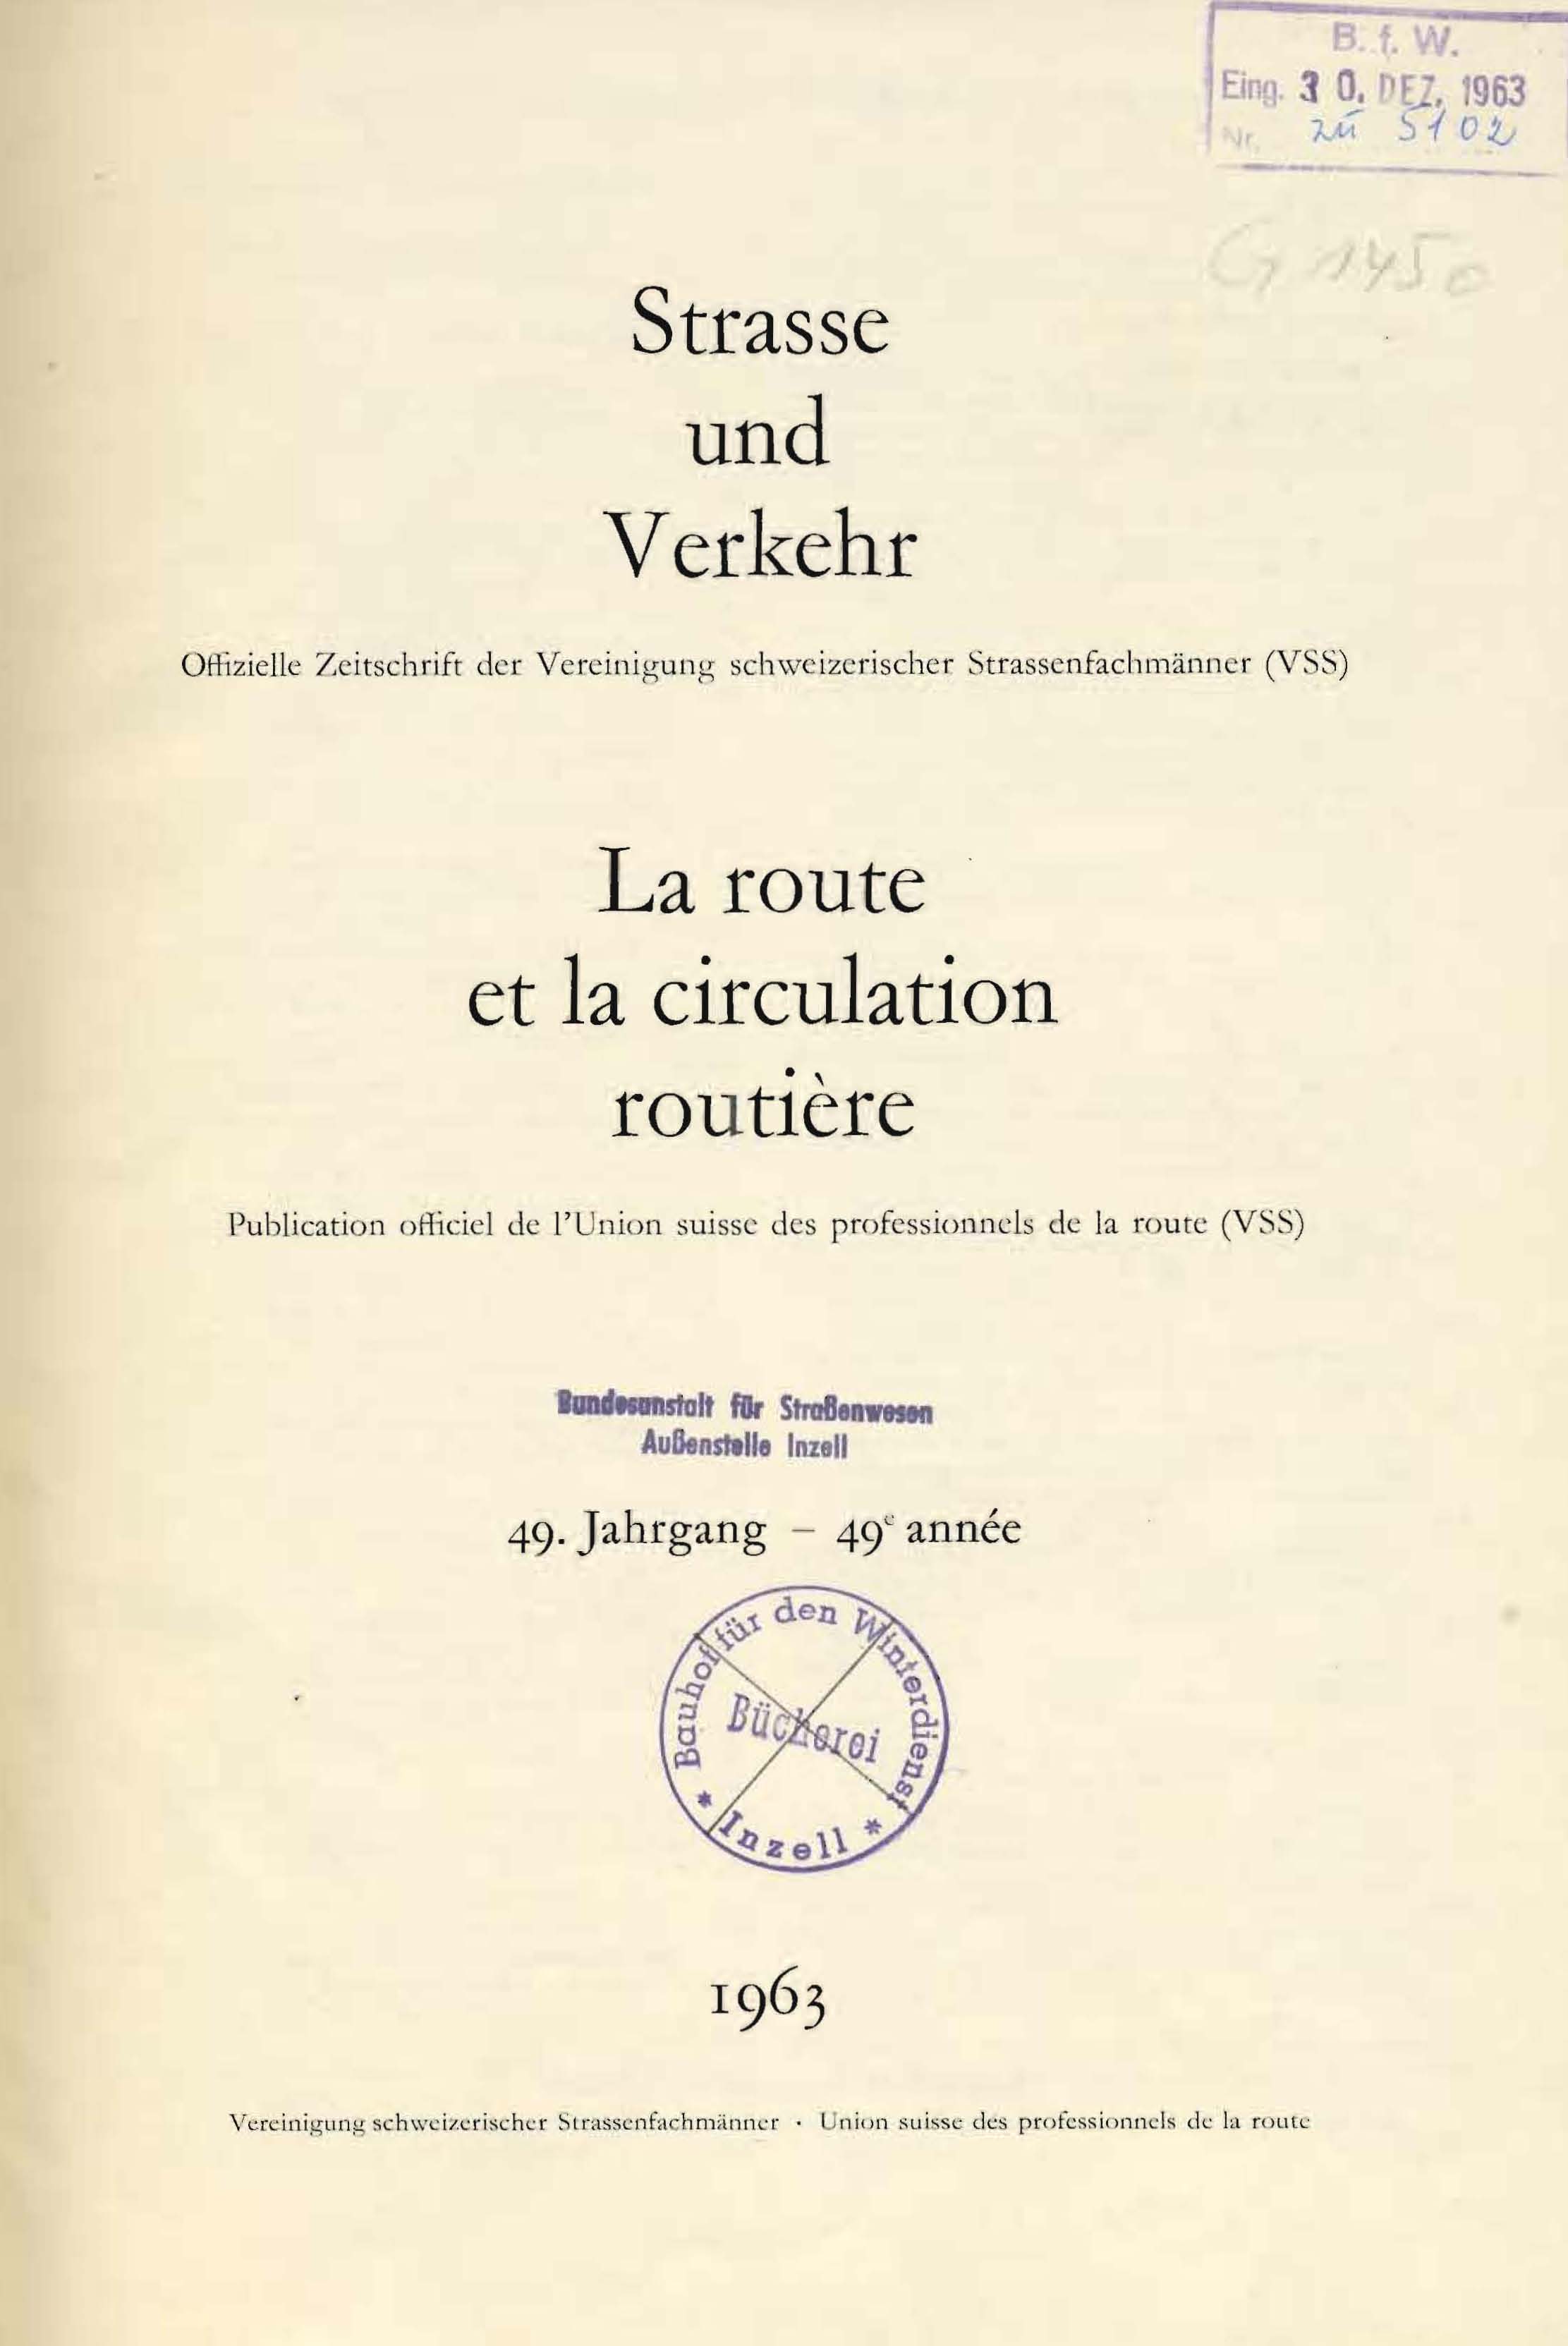 Strasse und Verkehr, 49. Jahrgang 1963